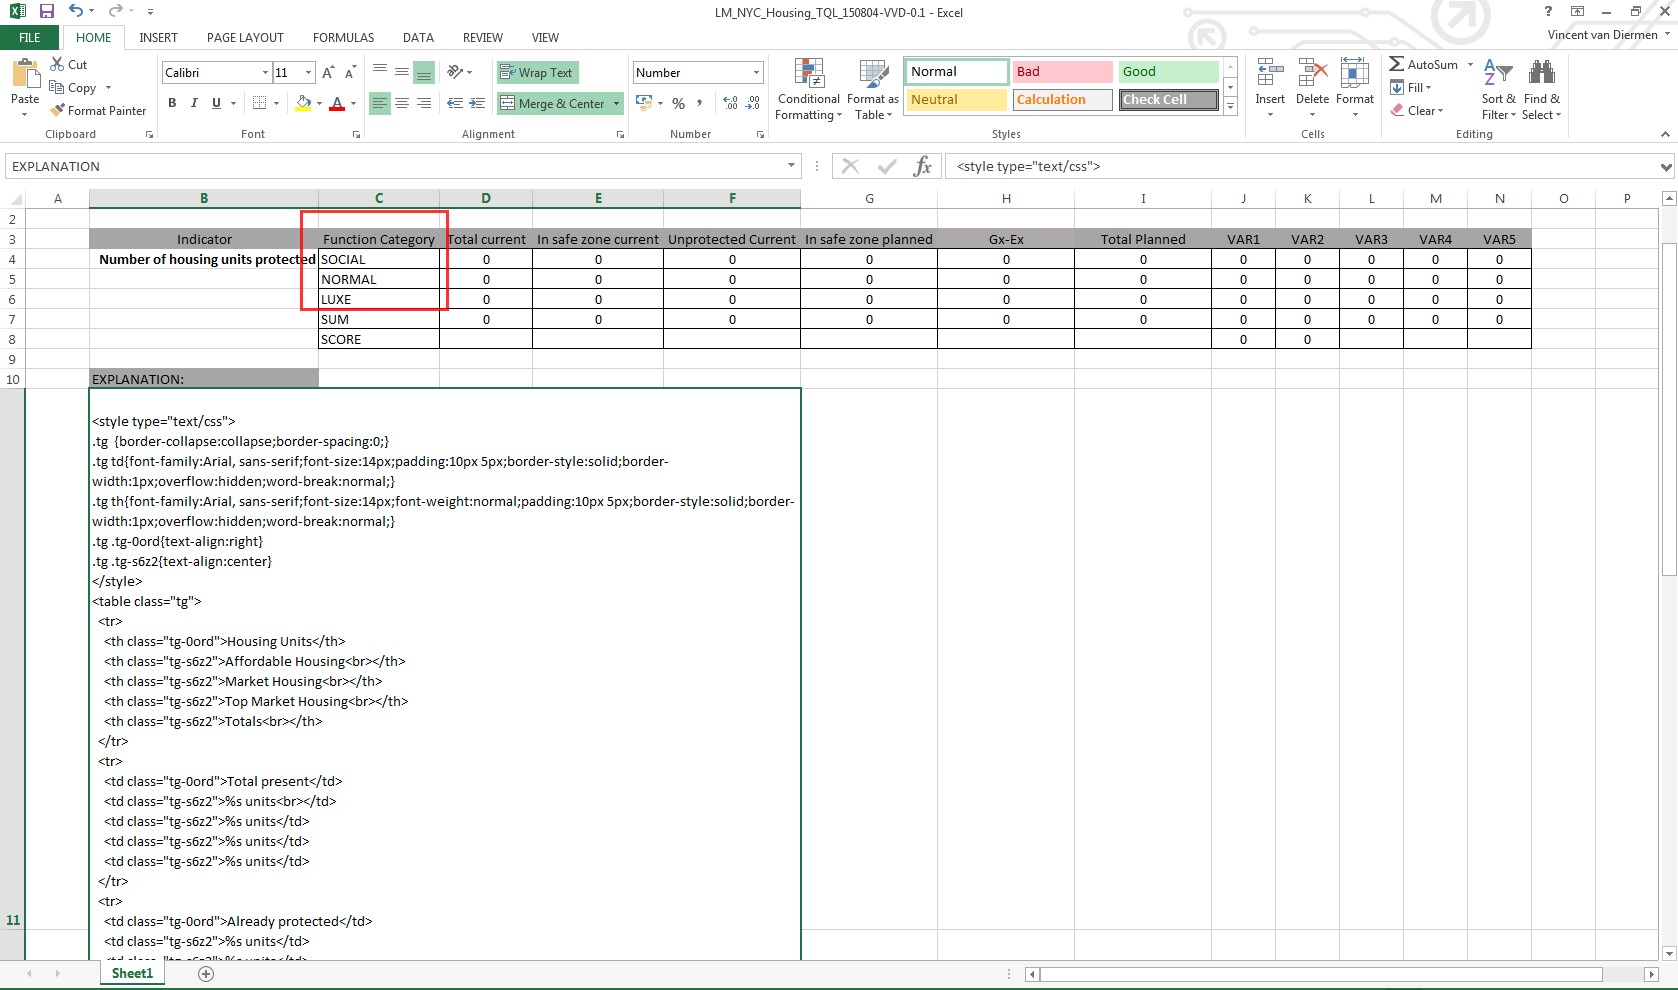 File:Excel-func-cat-Q3-2015.jpg